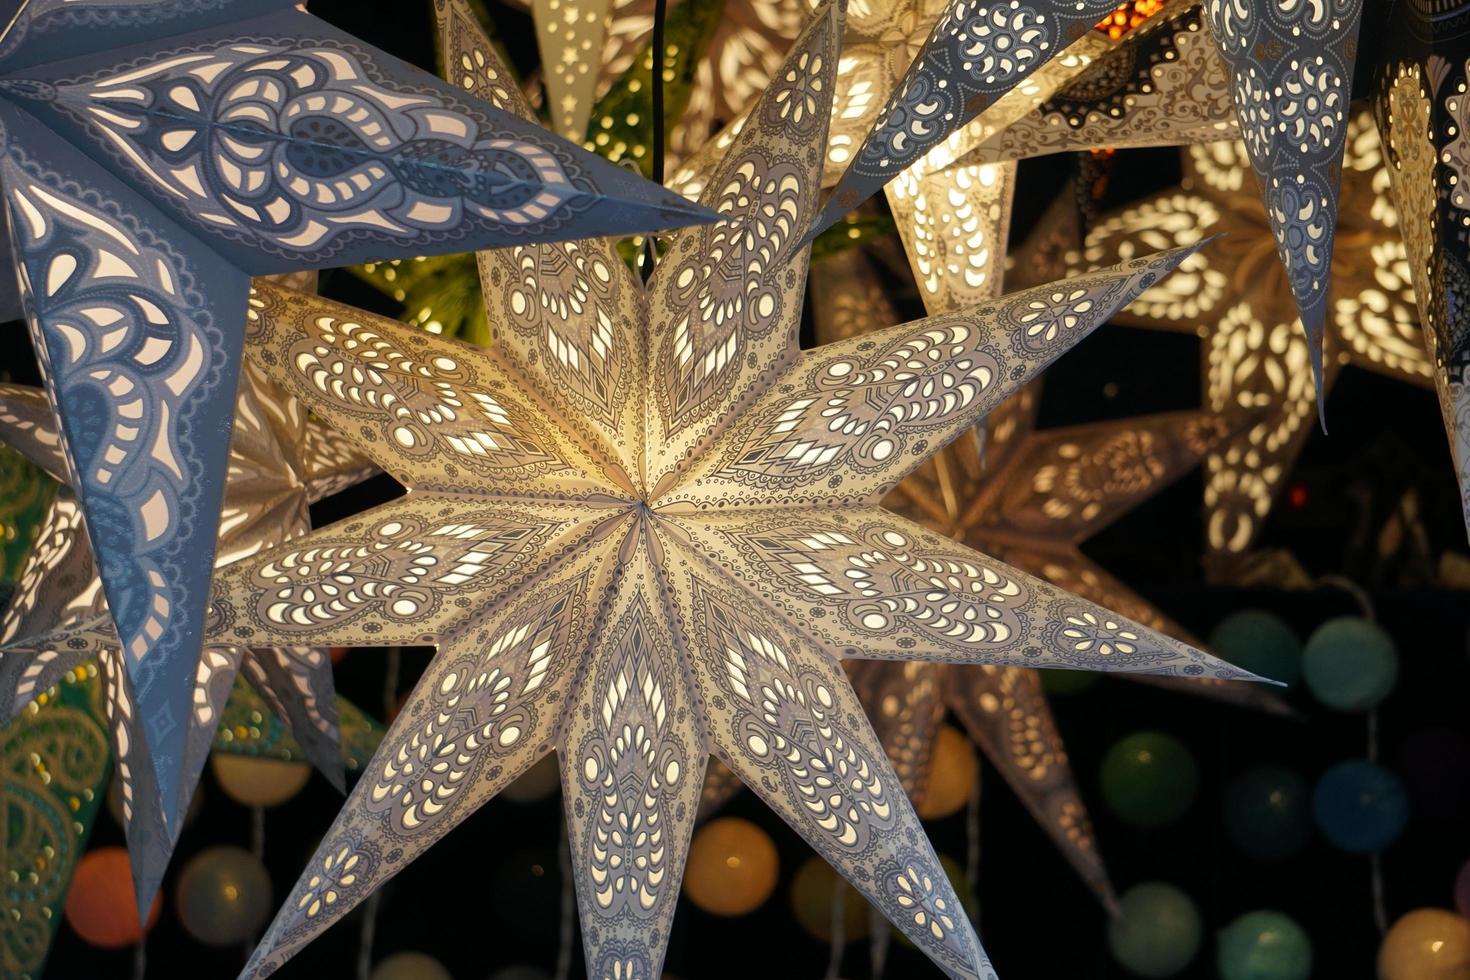 estrellas decorativas tradicionales como linternas navideñas en el mercado navideño. foto